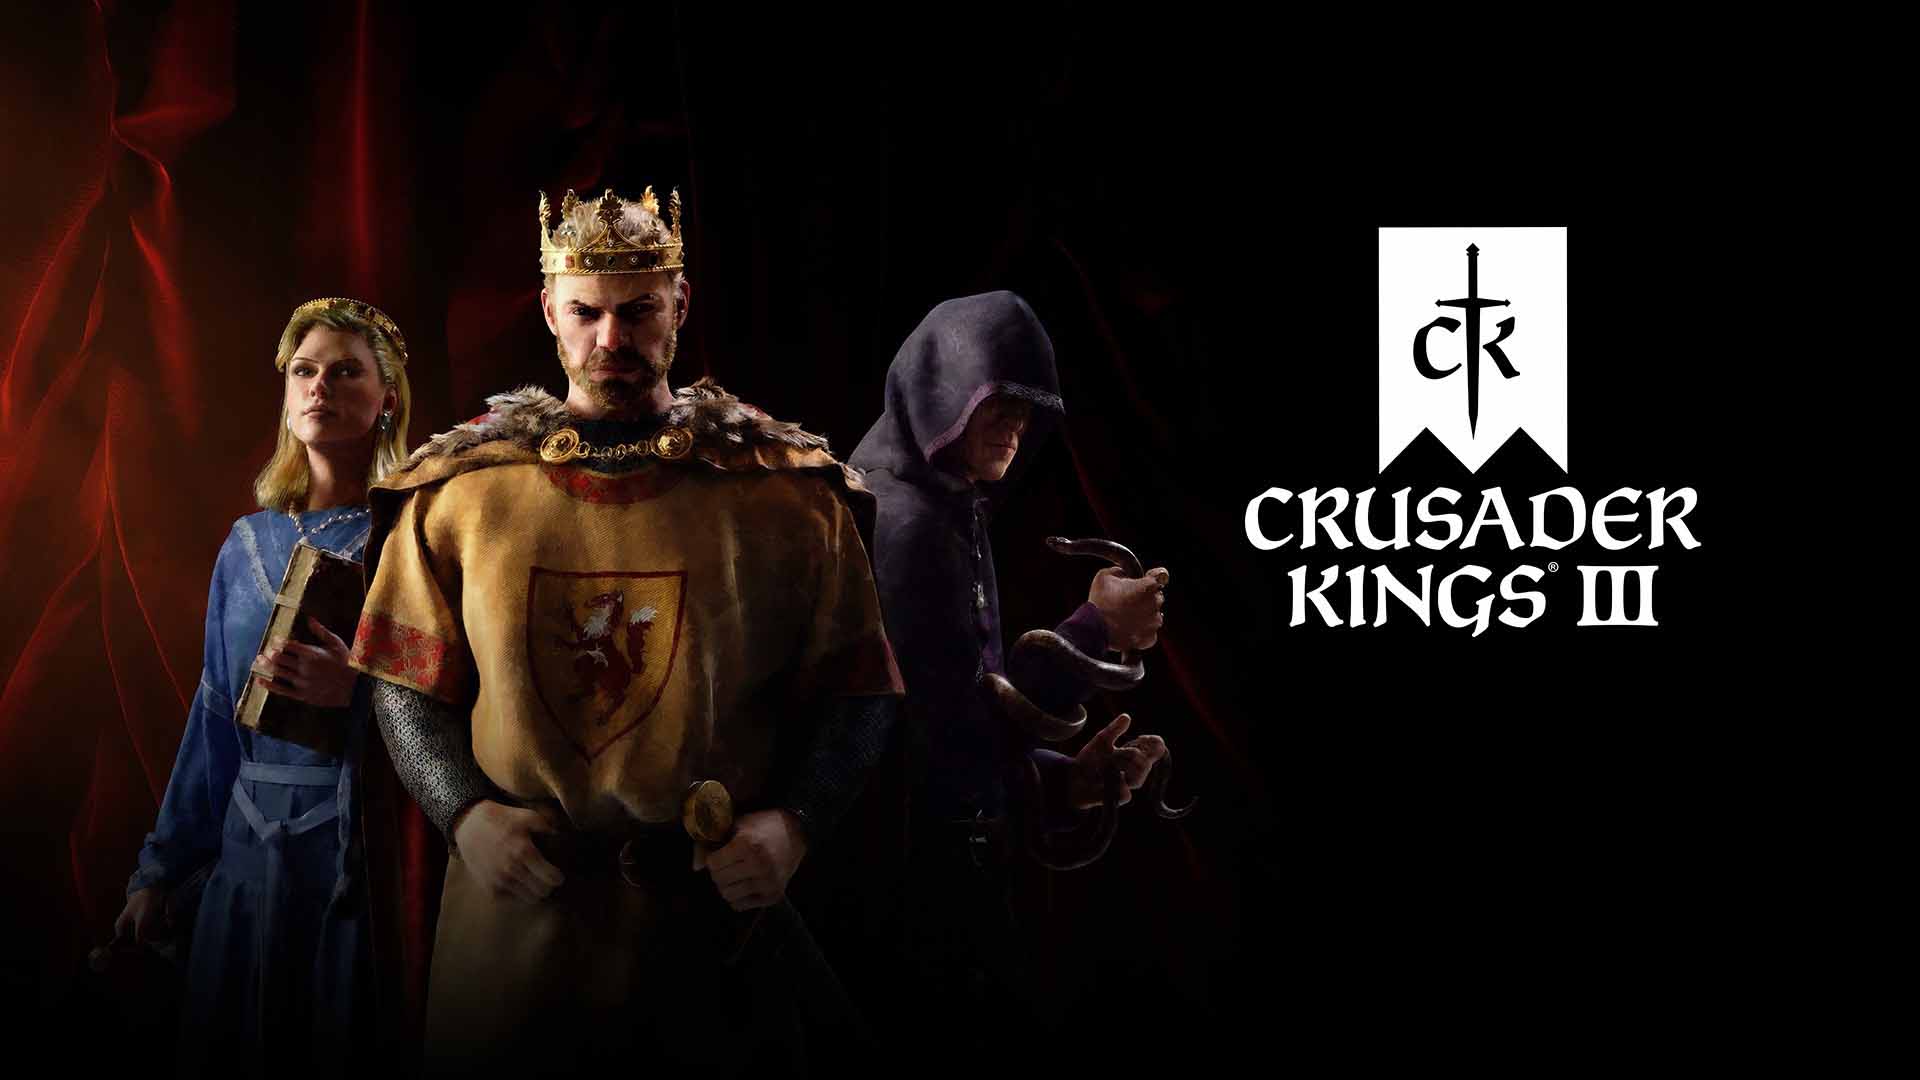 صورة رسمياً اللعبة الاستراتيجية Crusader Kings III تأتينا في سبتمبر القادم